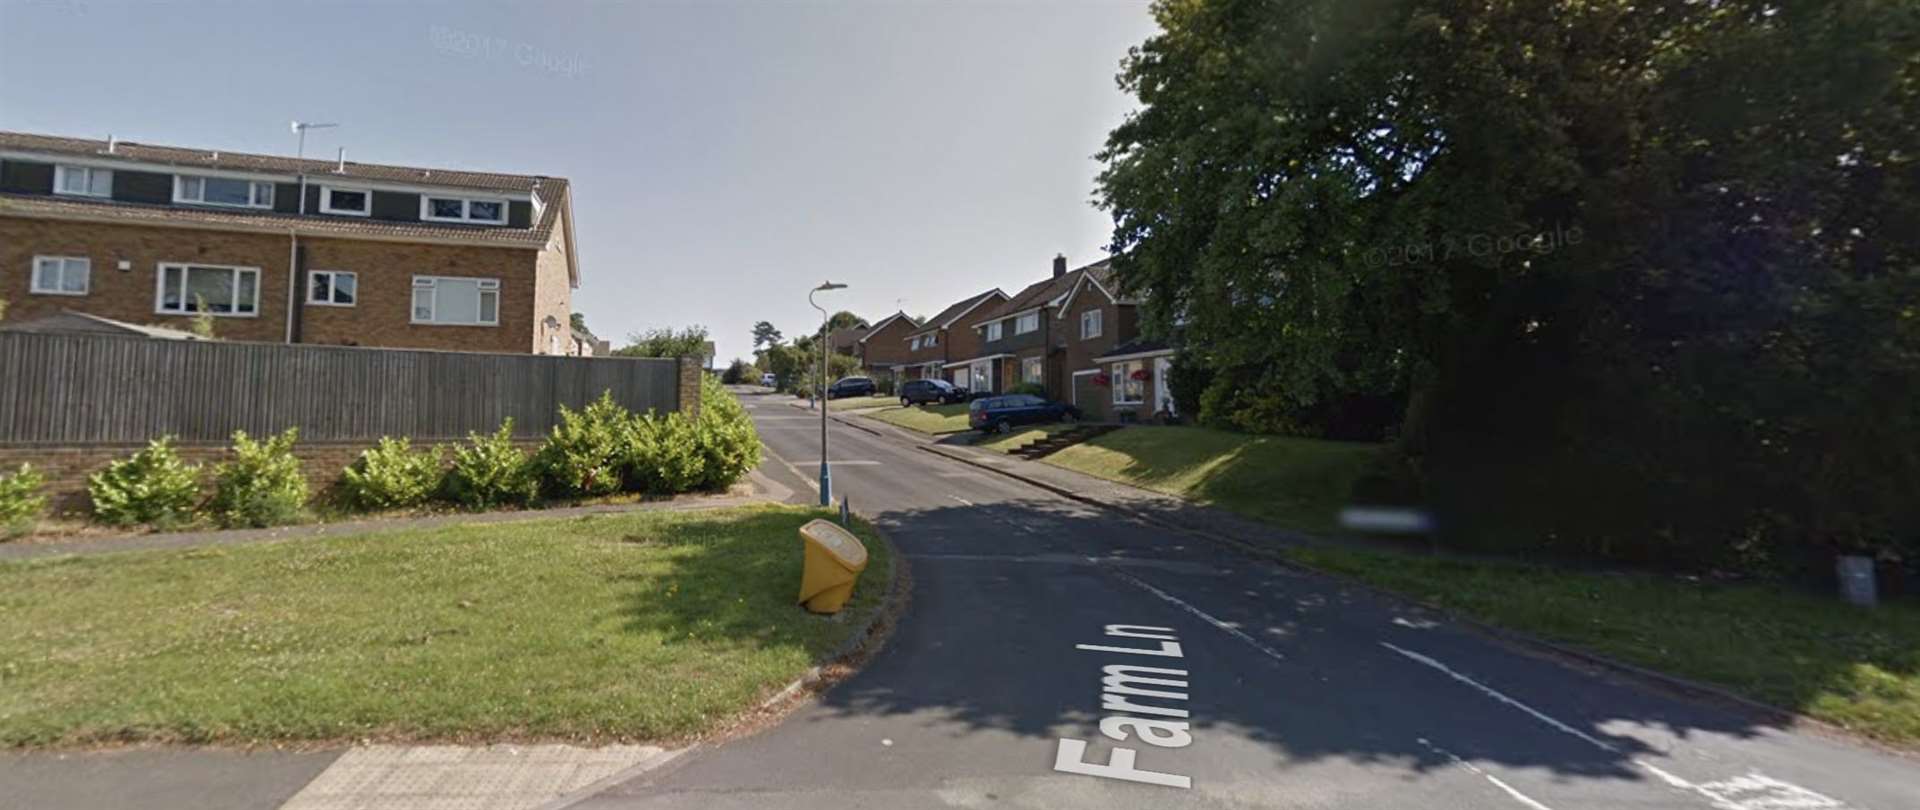 Farm Lane, Tonbridge. Picture: Google Street View